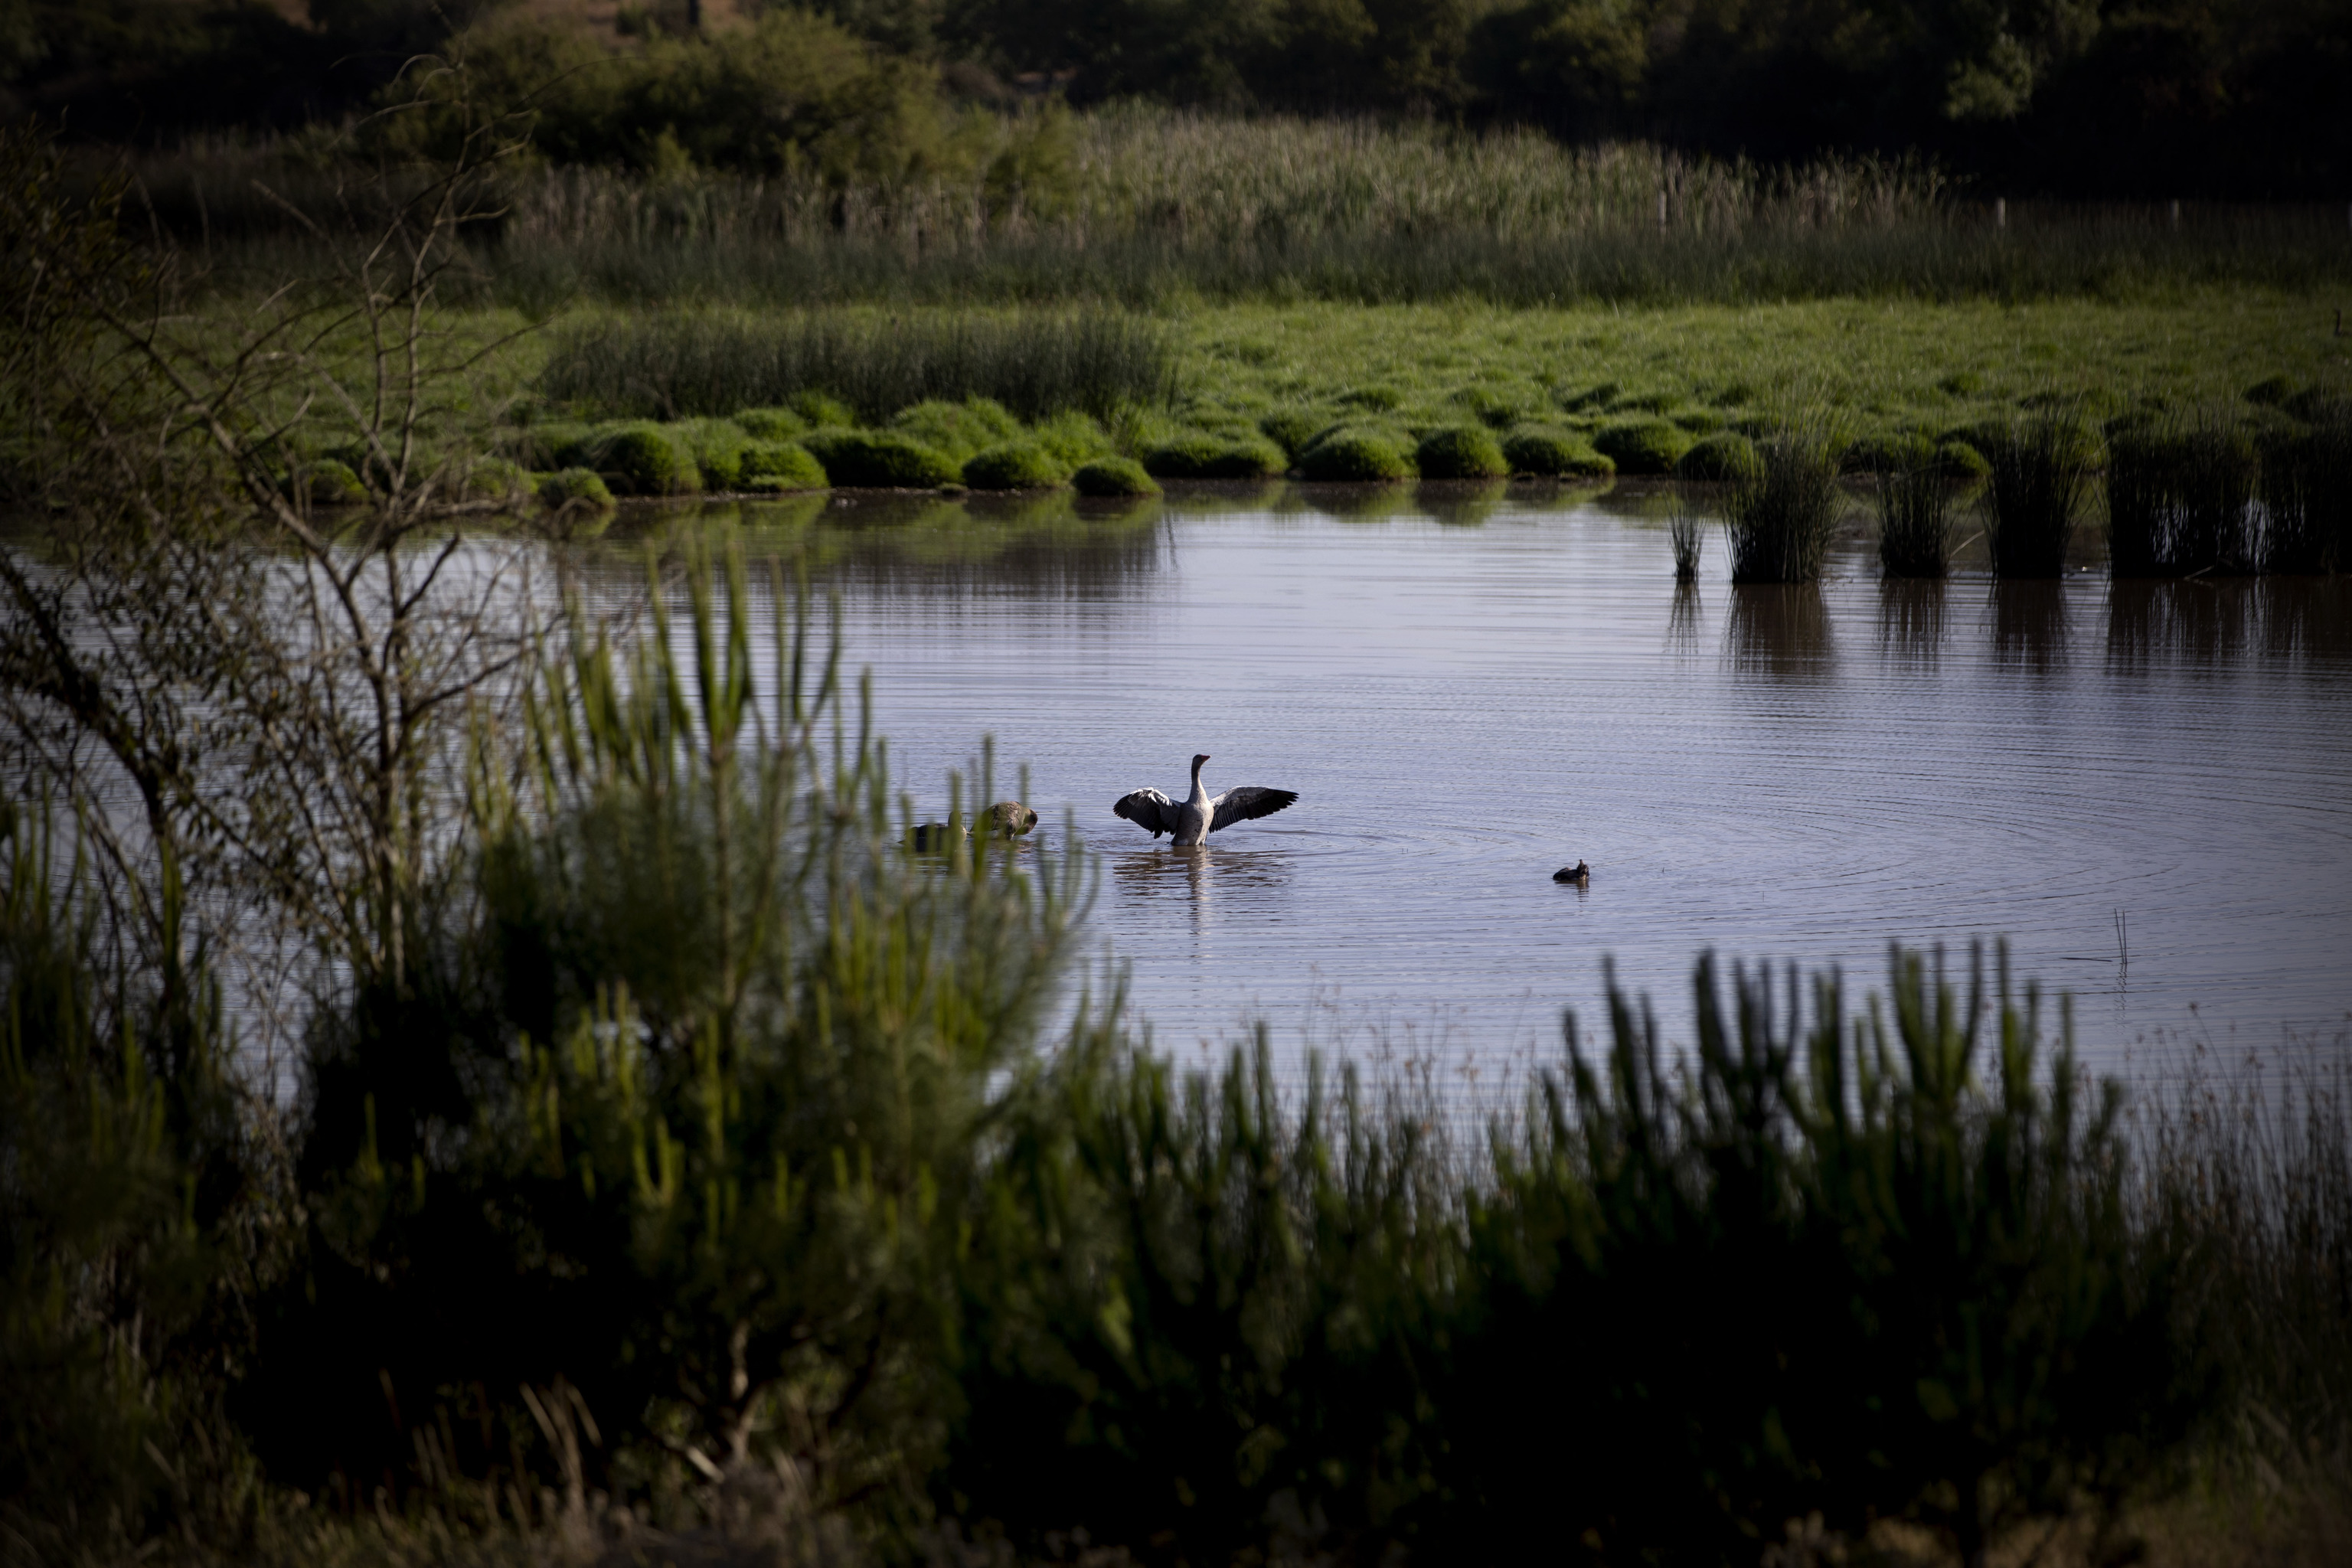 Un nade emprende el vuelo desde una de las lagunas que no se han secado todava en el Parque Nacional de Doana, declarado Patrimonio de la Humanidad.